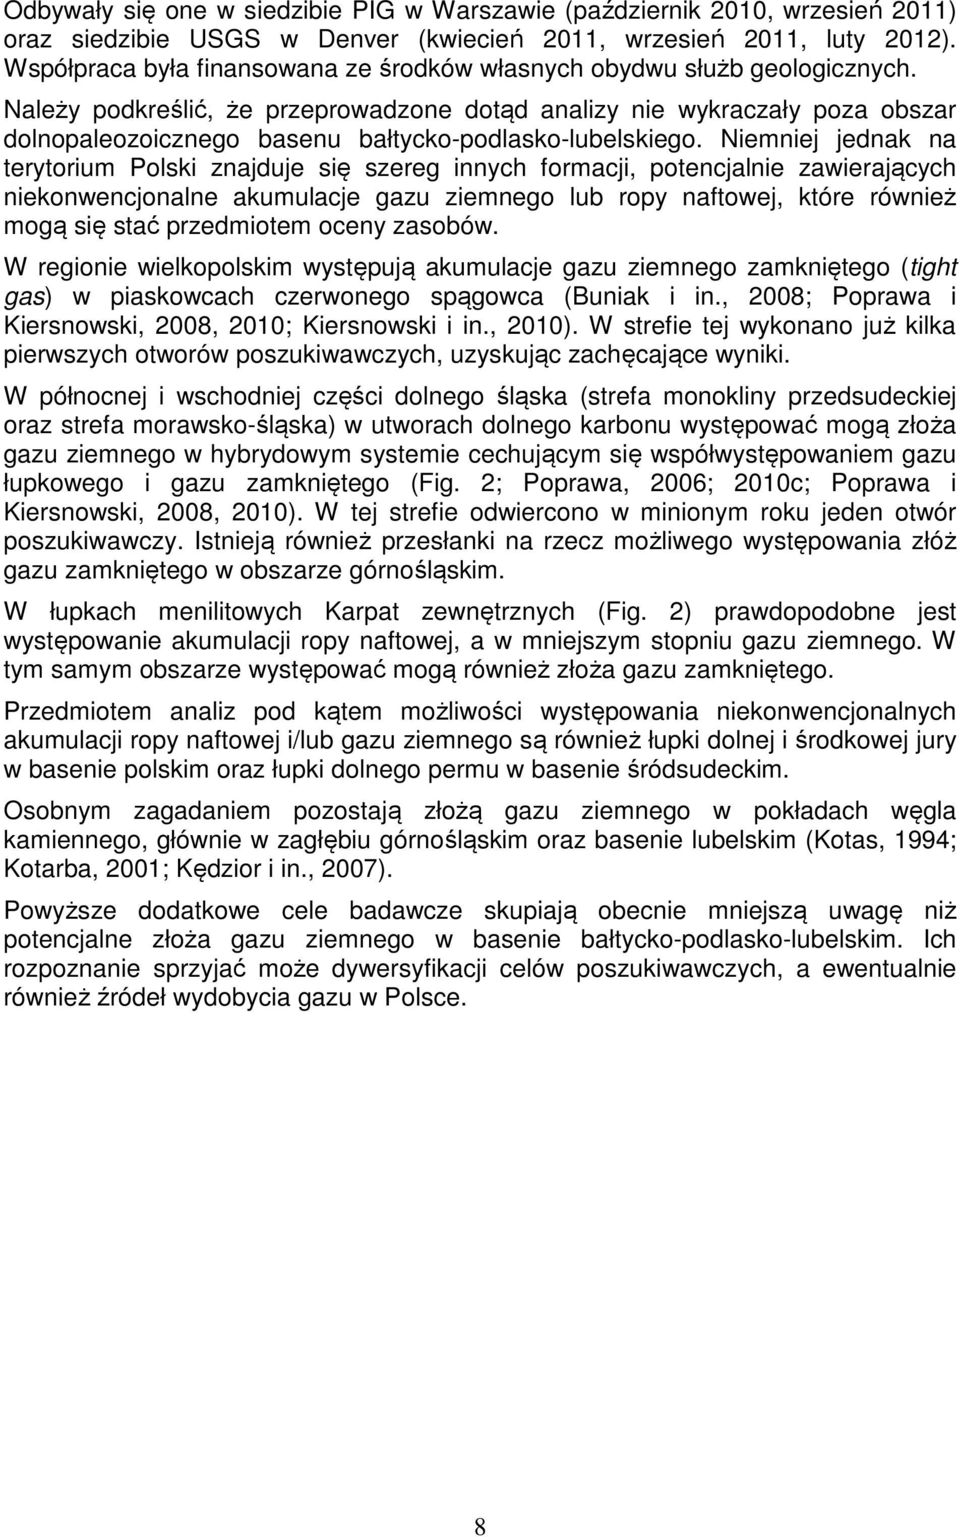 Należy podkreślić, że przeprowadzone dotąd analizy nie wykraczały poza obszar dolnopaleozoicznego basenu bałtycko-podlasko-lubelskiego.